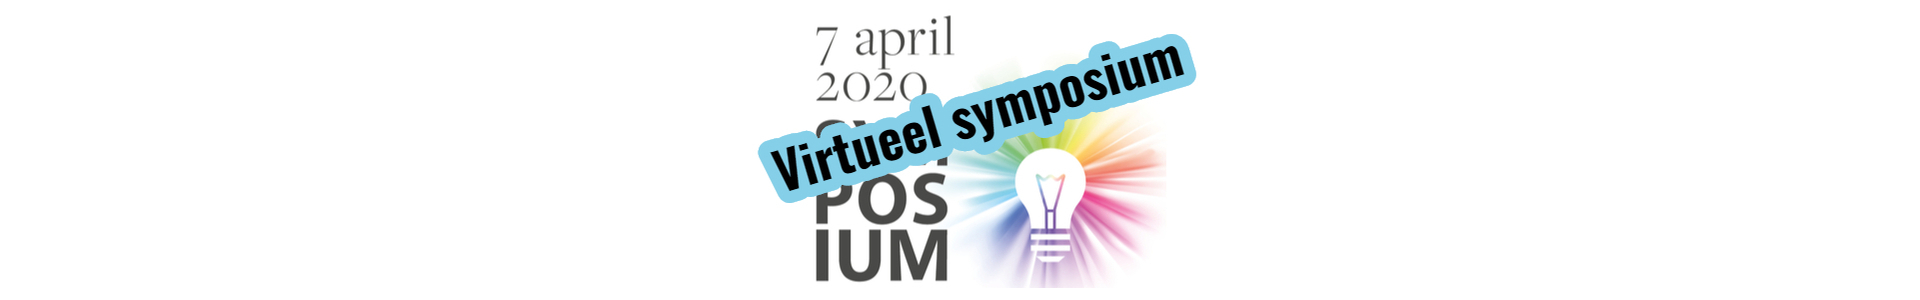 Symposium: Virtuele grenzen verleggen